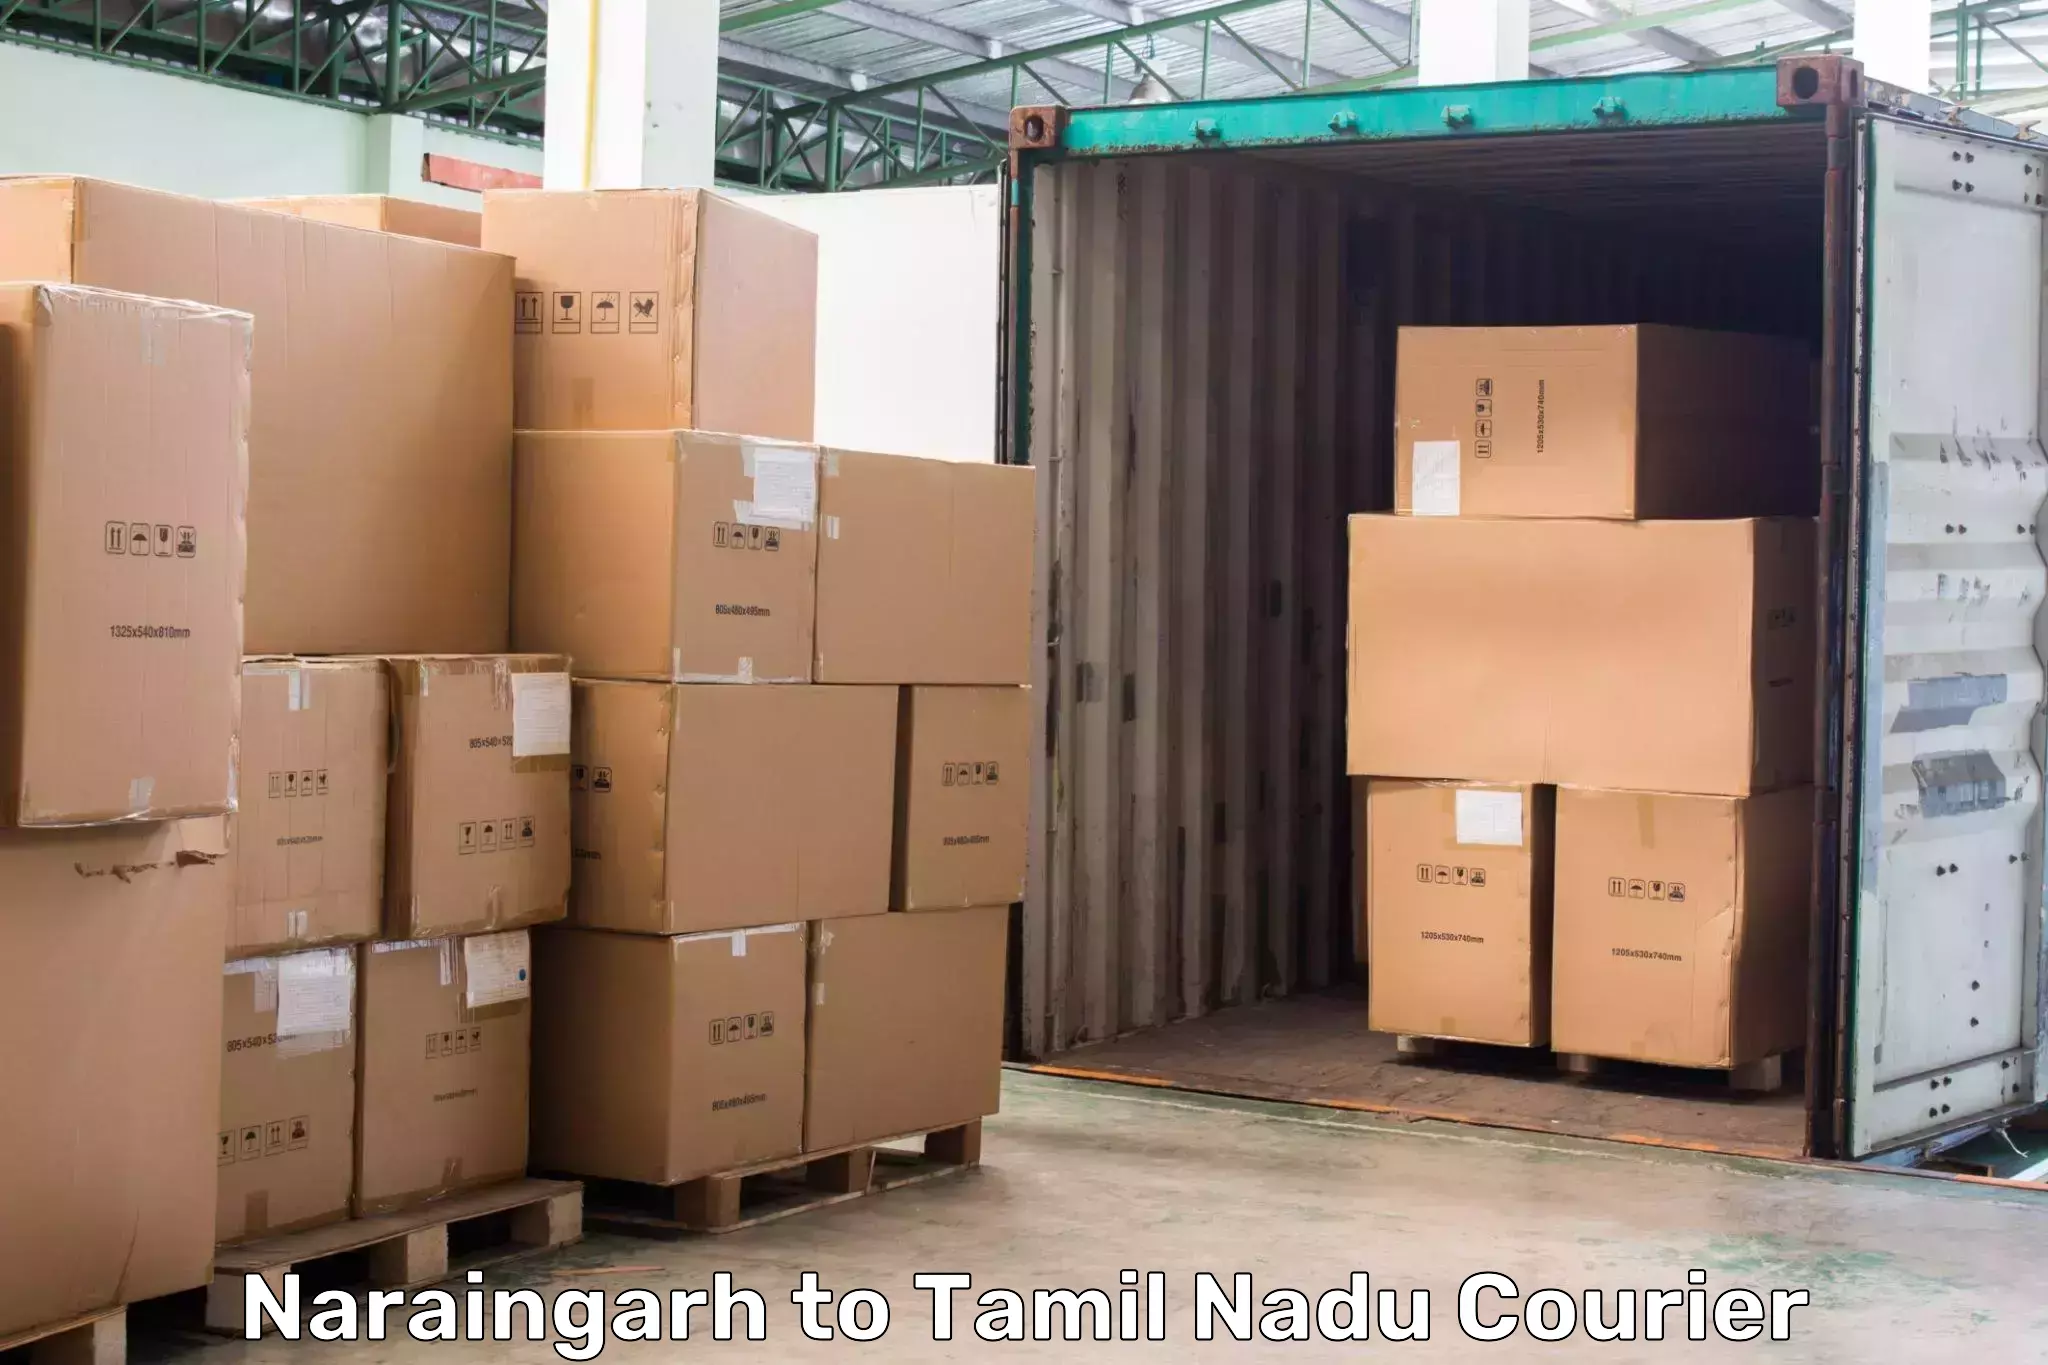 Urgent courier needs Naraingarh to Kuttanur